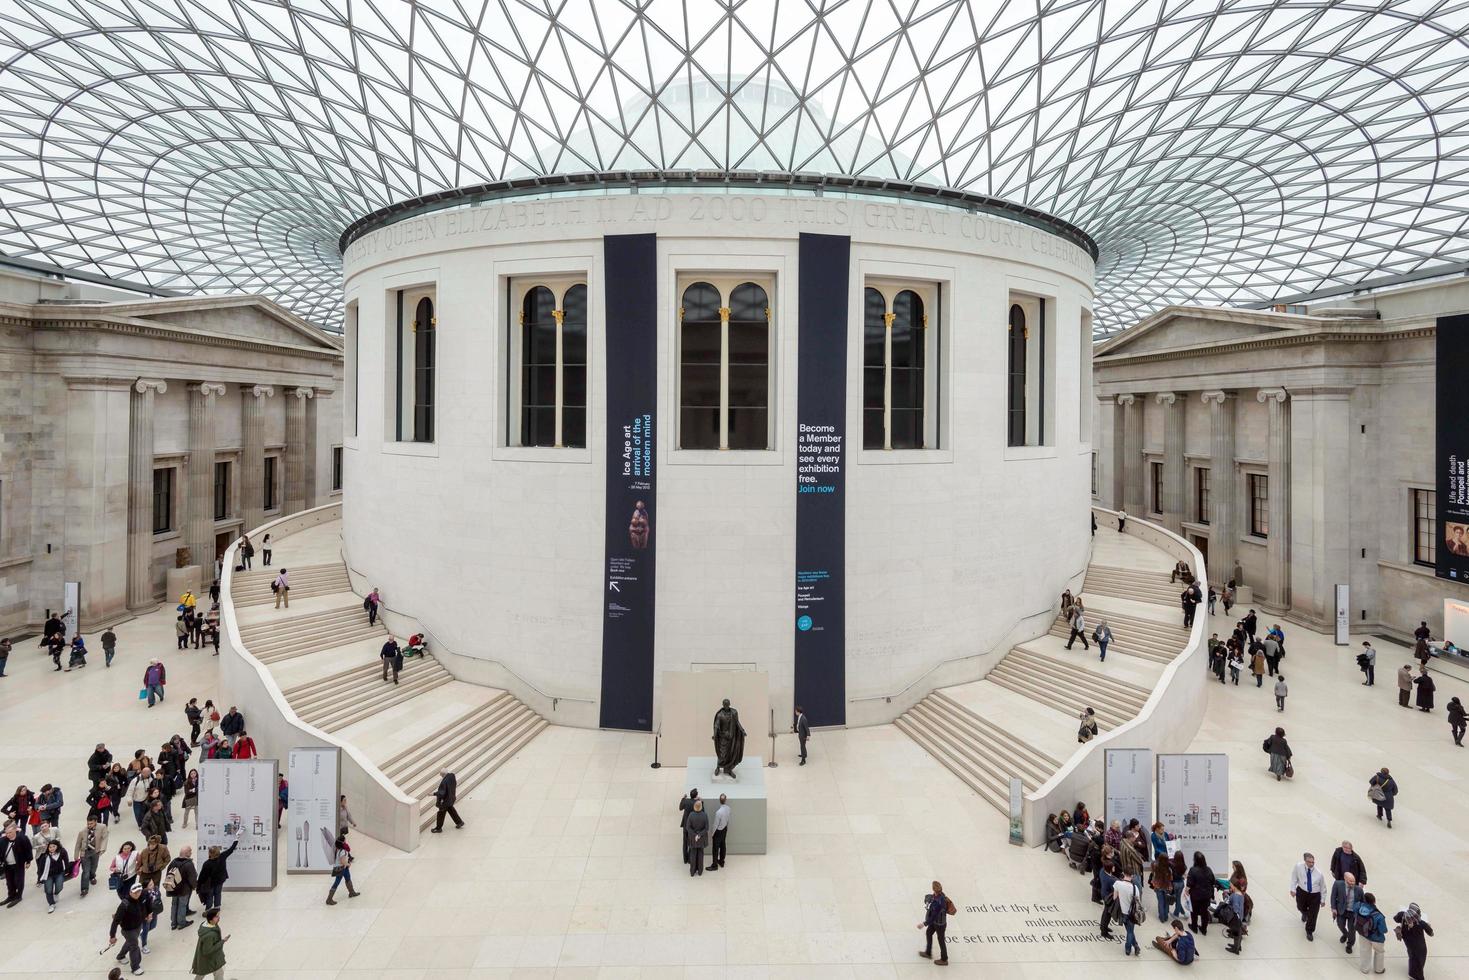 Londres, Reino Unido, 2012. La gran corte en el Museo Británico. foto